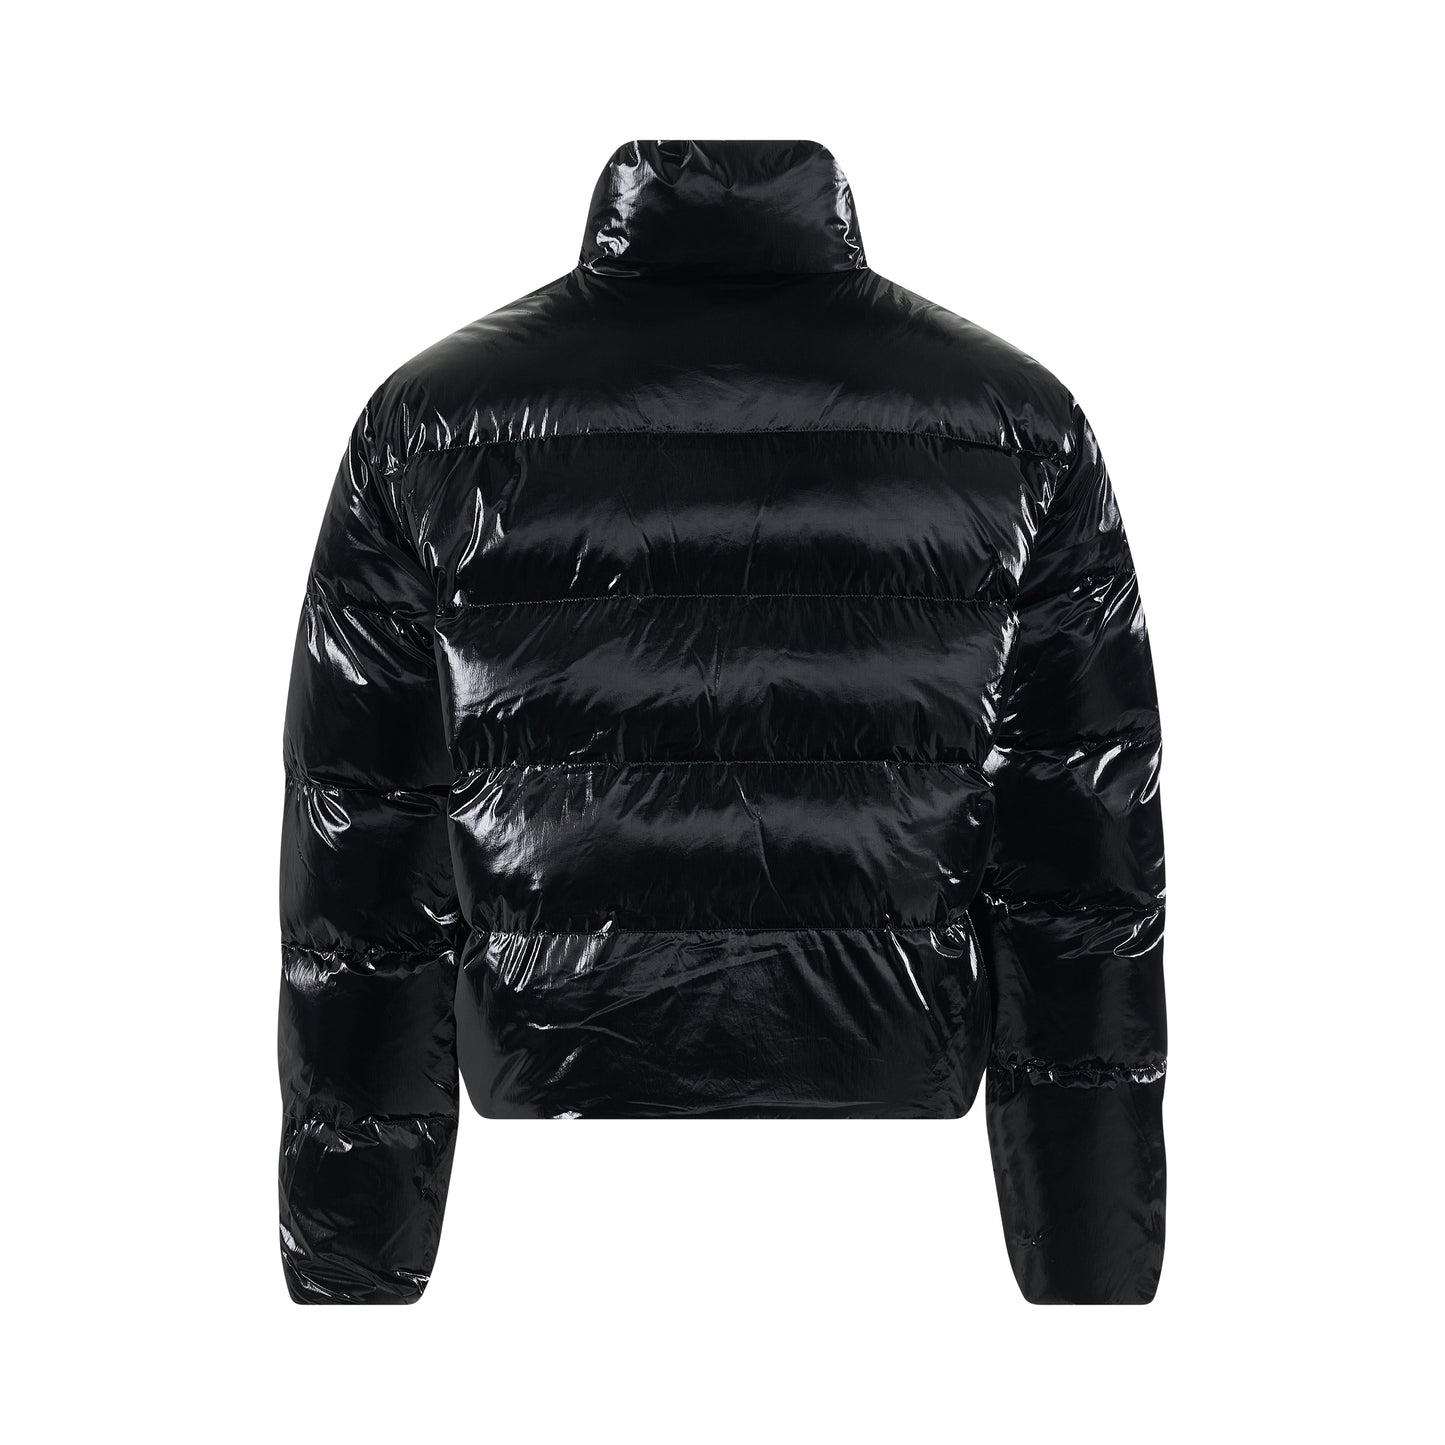 Nightrider Puffer Jacket in Black